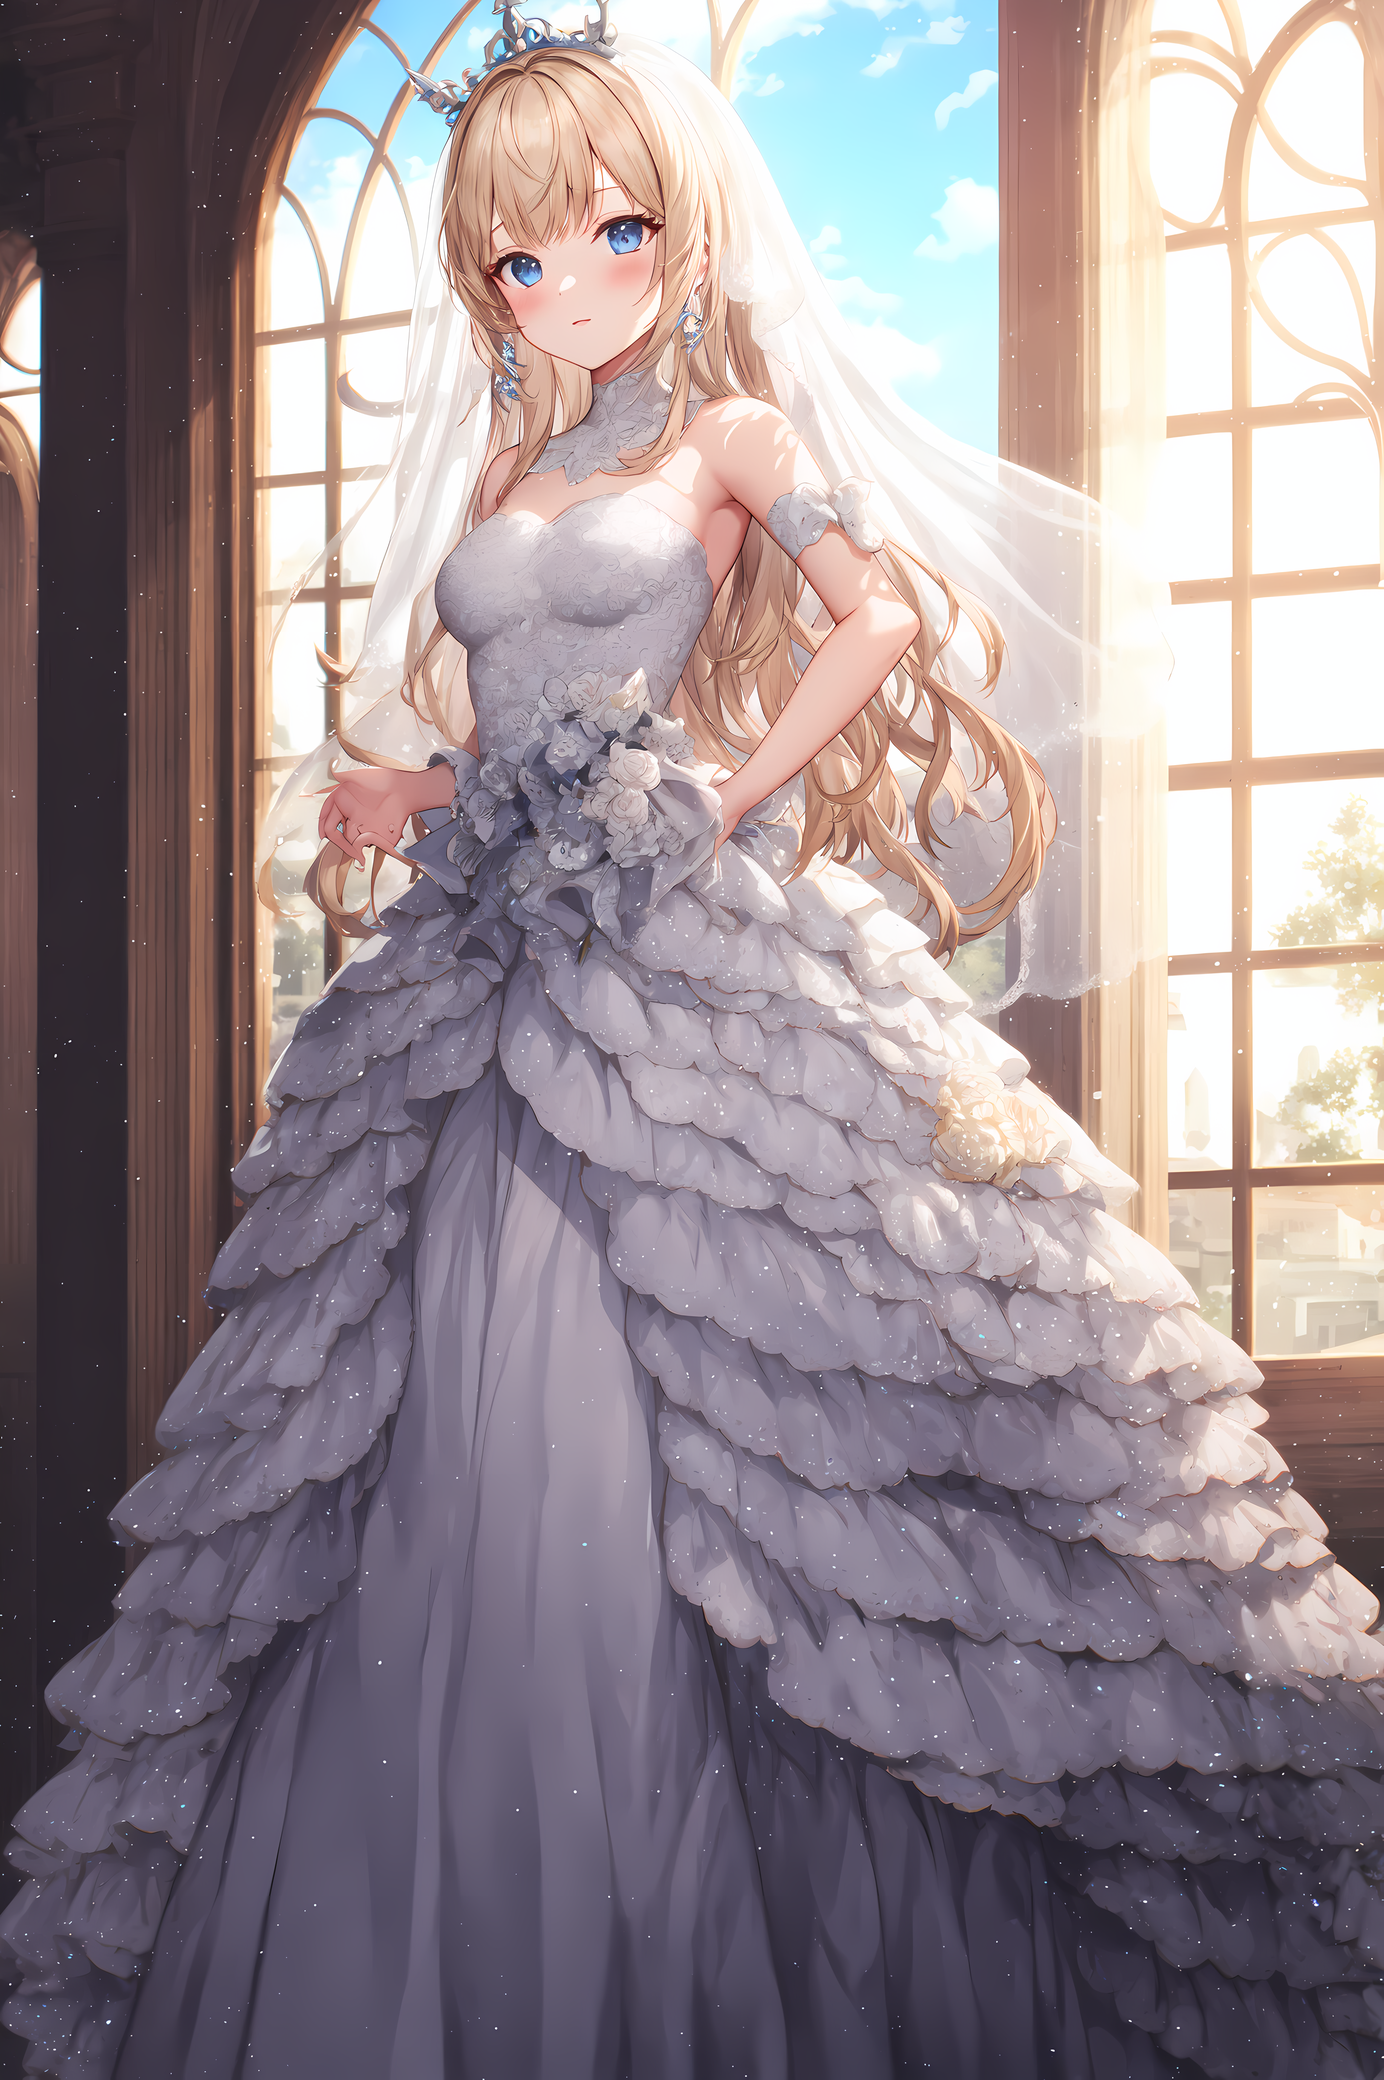 Anime Girl Wedding Dress Stock Illustration 2206156403 | Shutterstock